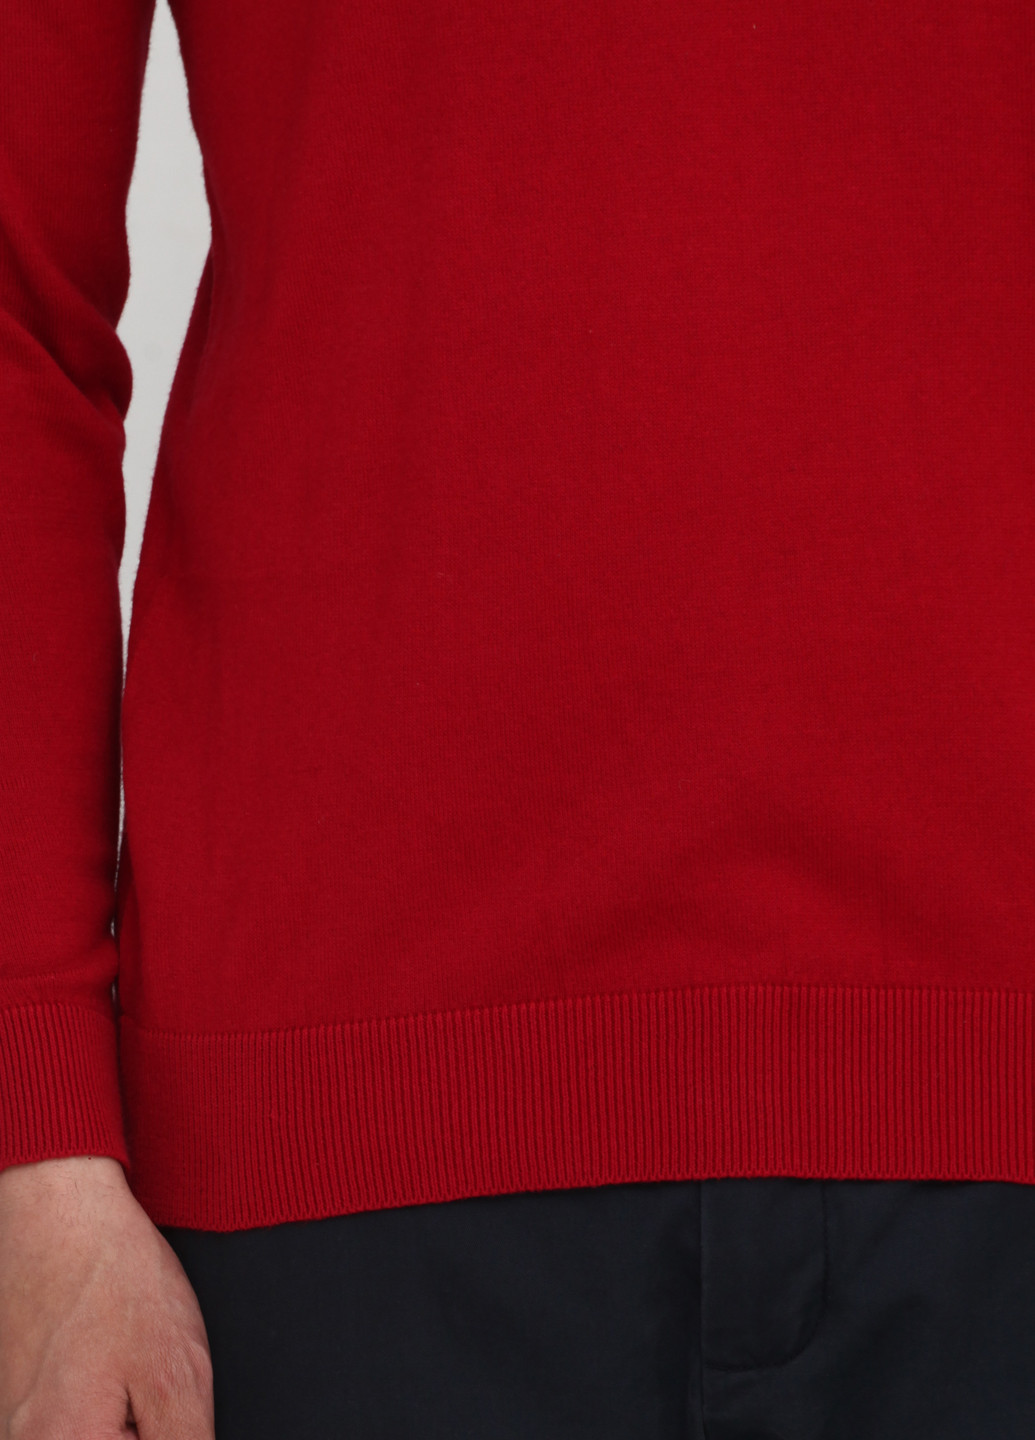 Красный демисезонный пуловер пуловер Norsons